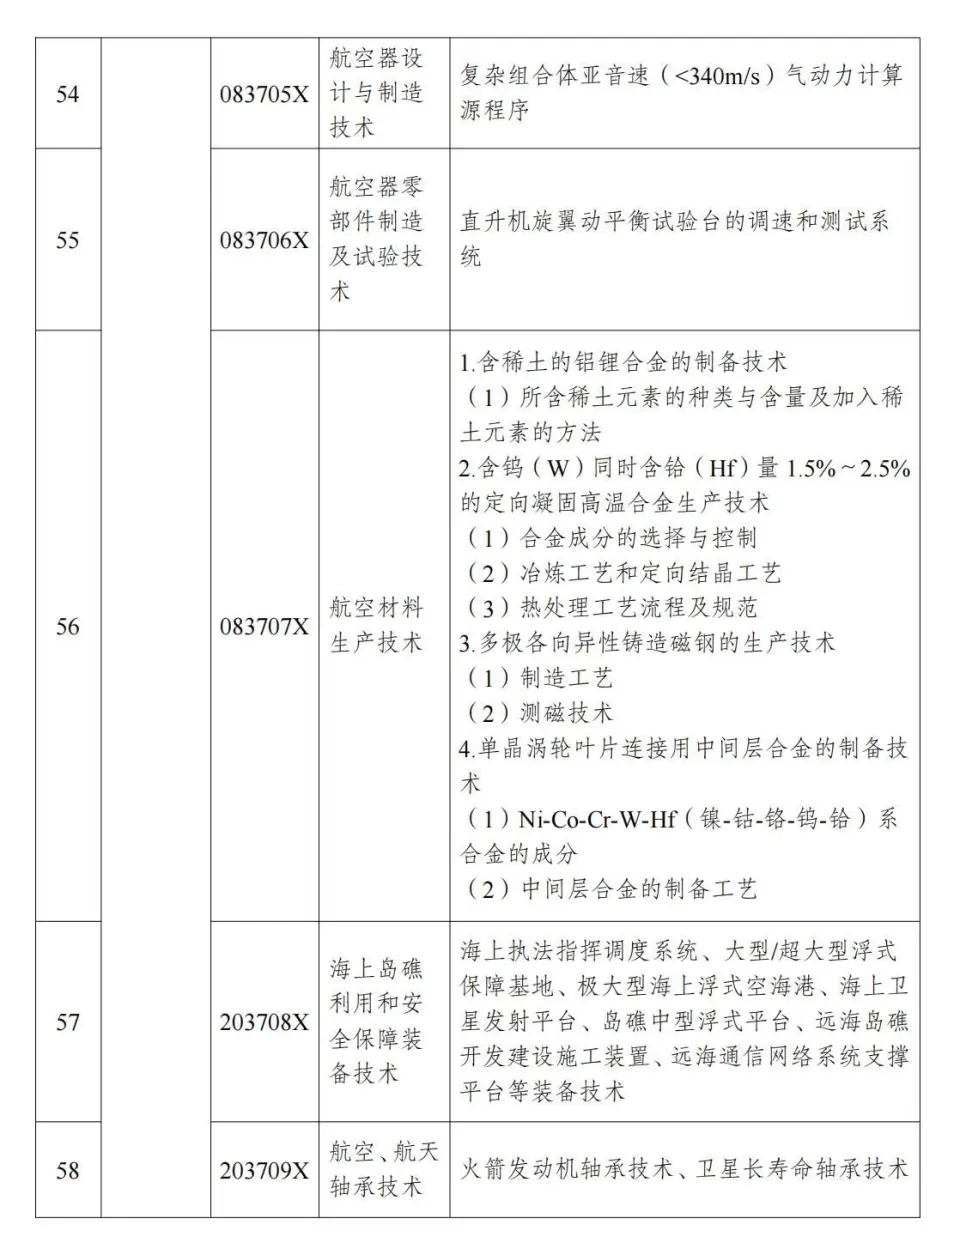 两部分公布《中国制止出口限制出口技术目录》 第15张图片